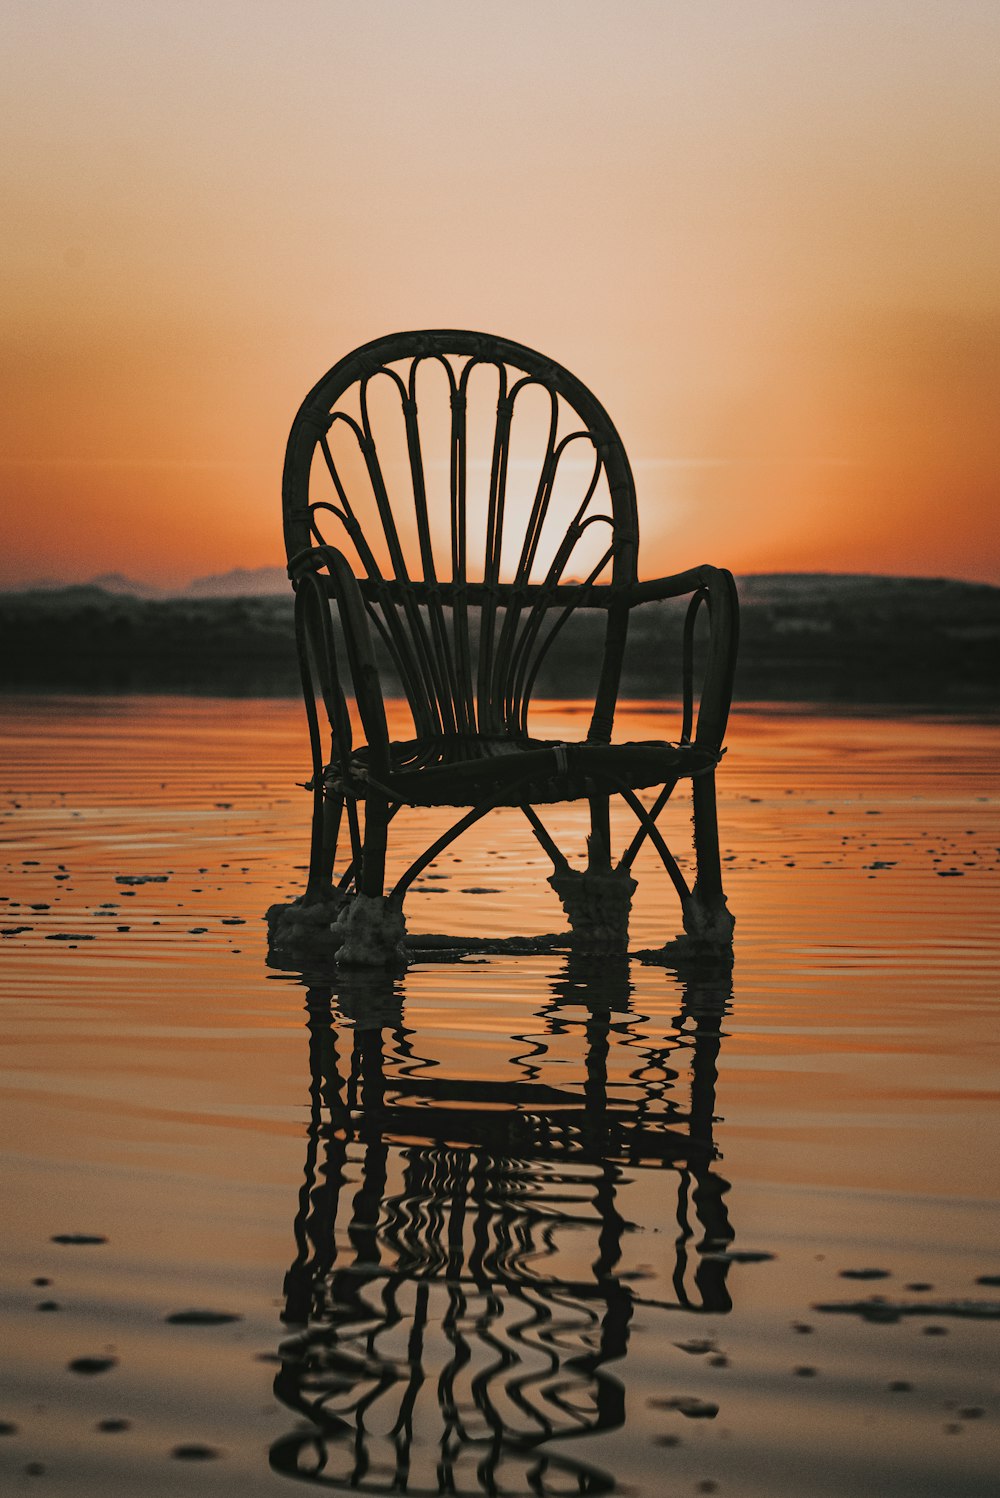 夕暮れ時のビーチに浮かぶ木製の椅子のシルエット